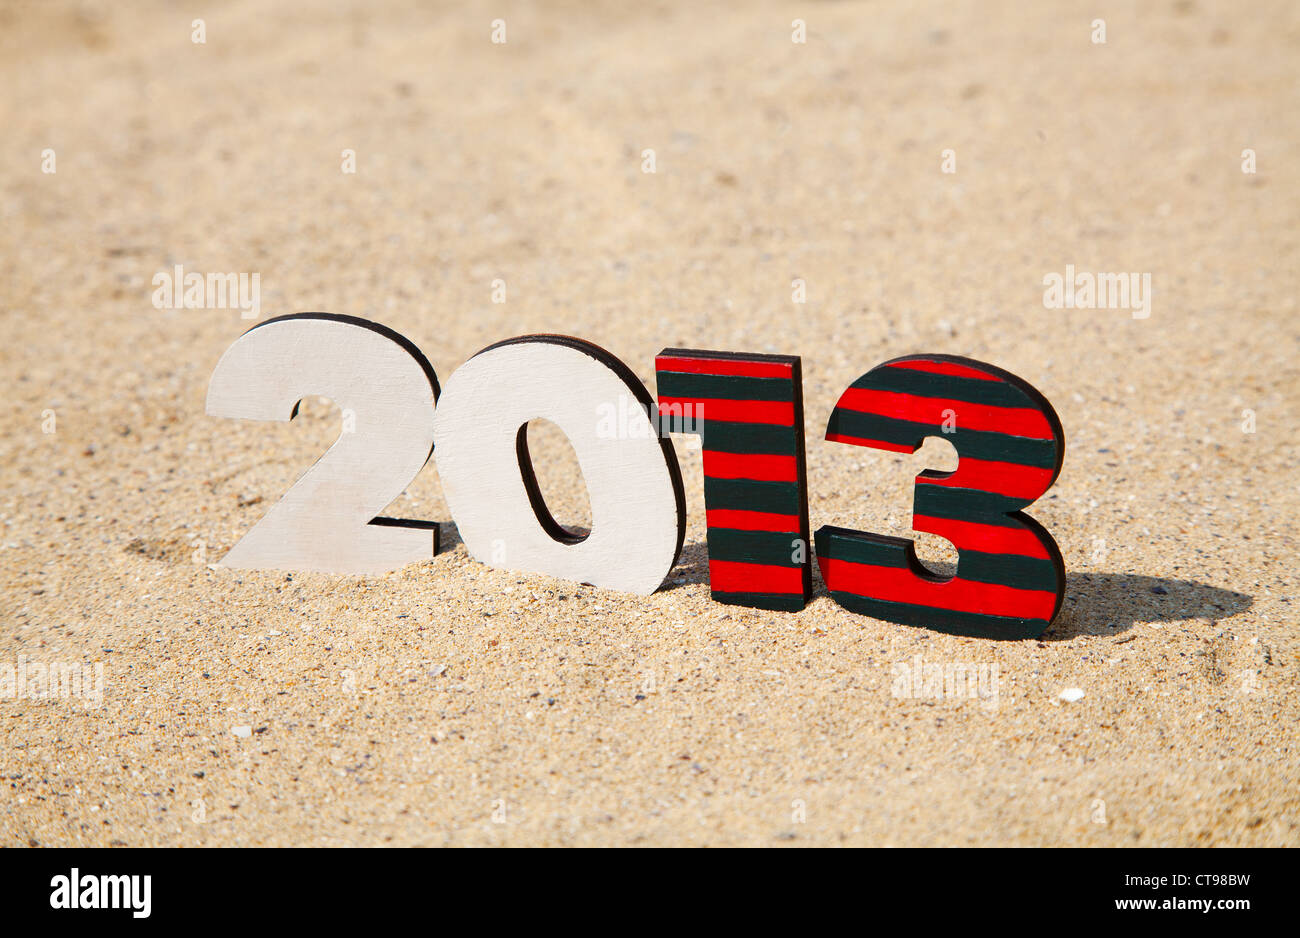 Numéro de l'année 2013 en bois sur le sable sur une plage Banque D'Images